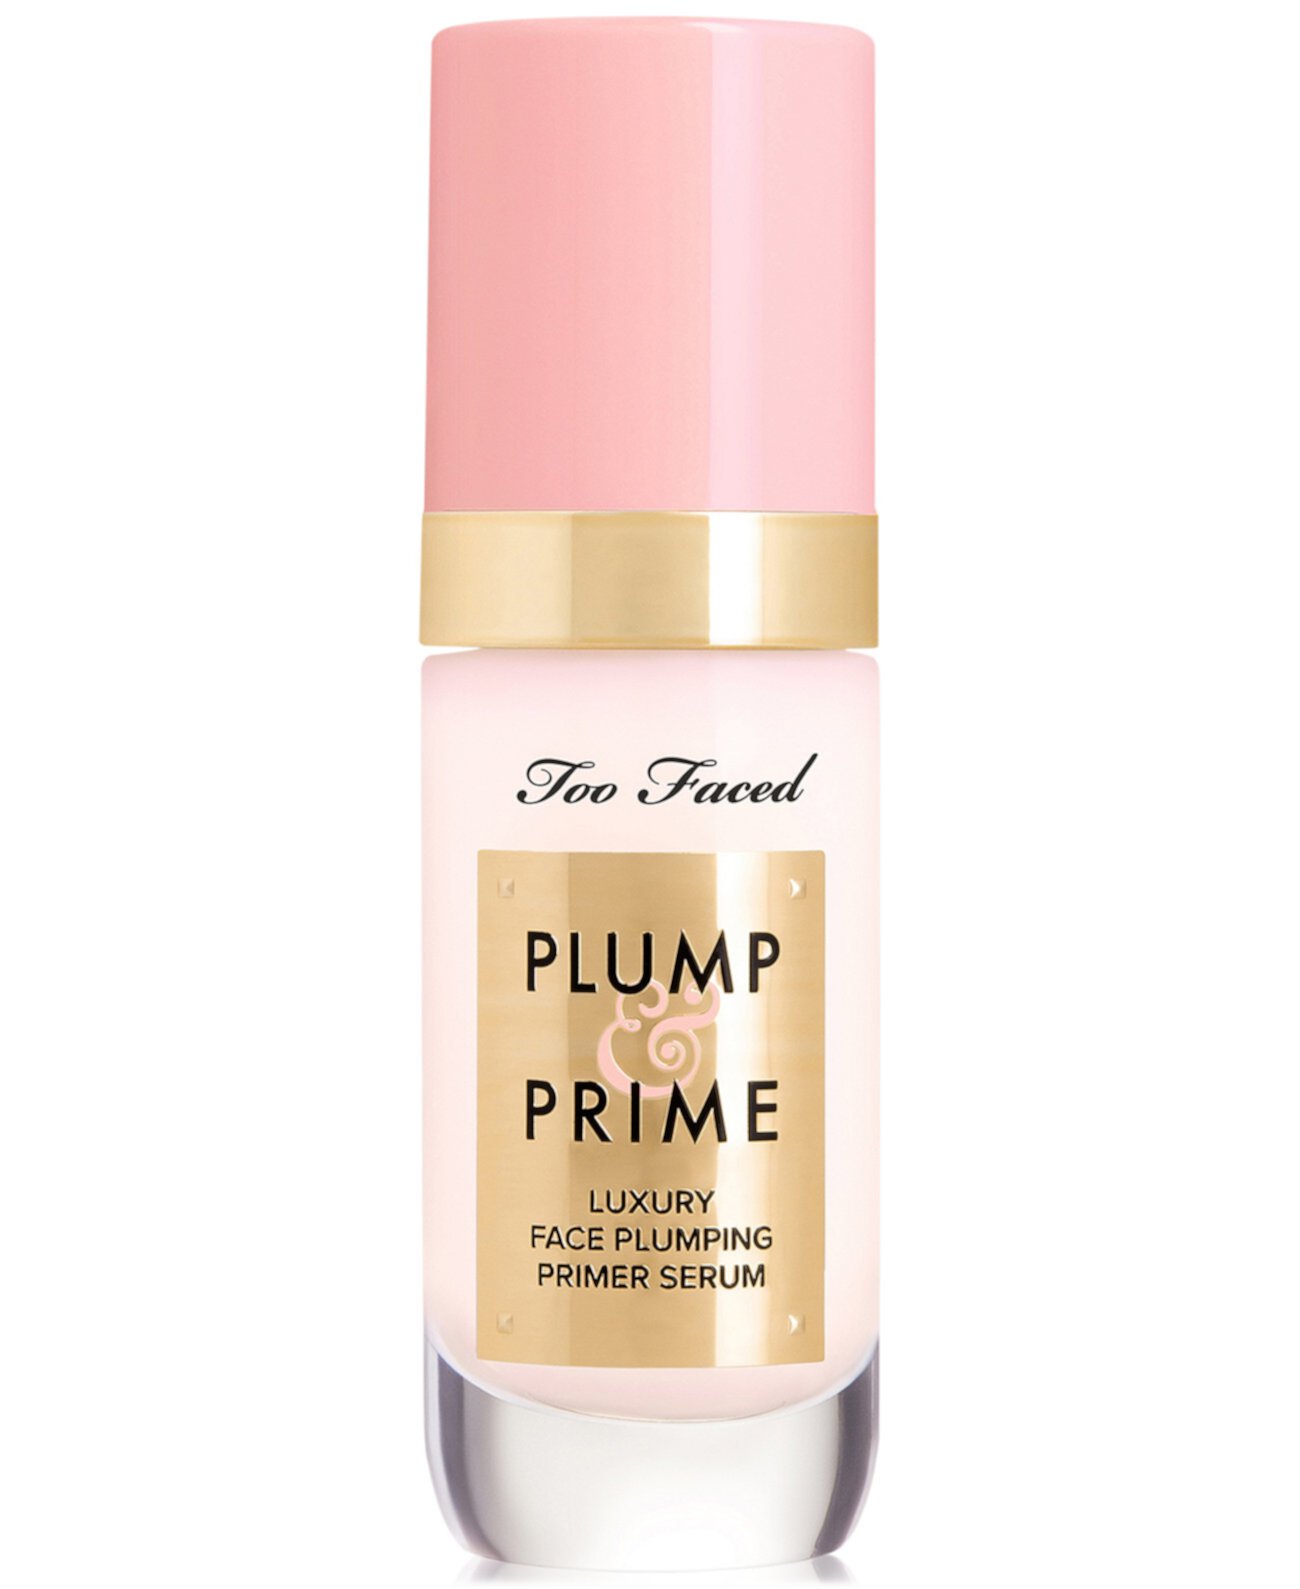 Plump & Prime Face Plumping Primer Serum, 1 унция. Too Faced